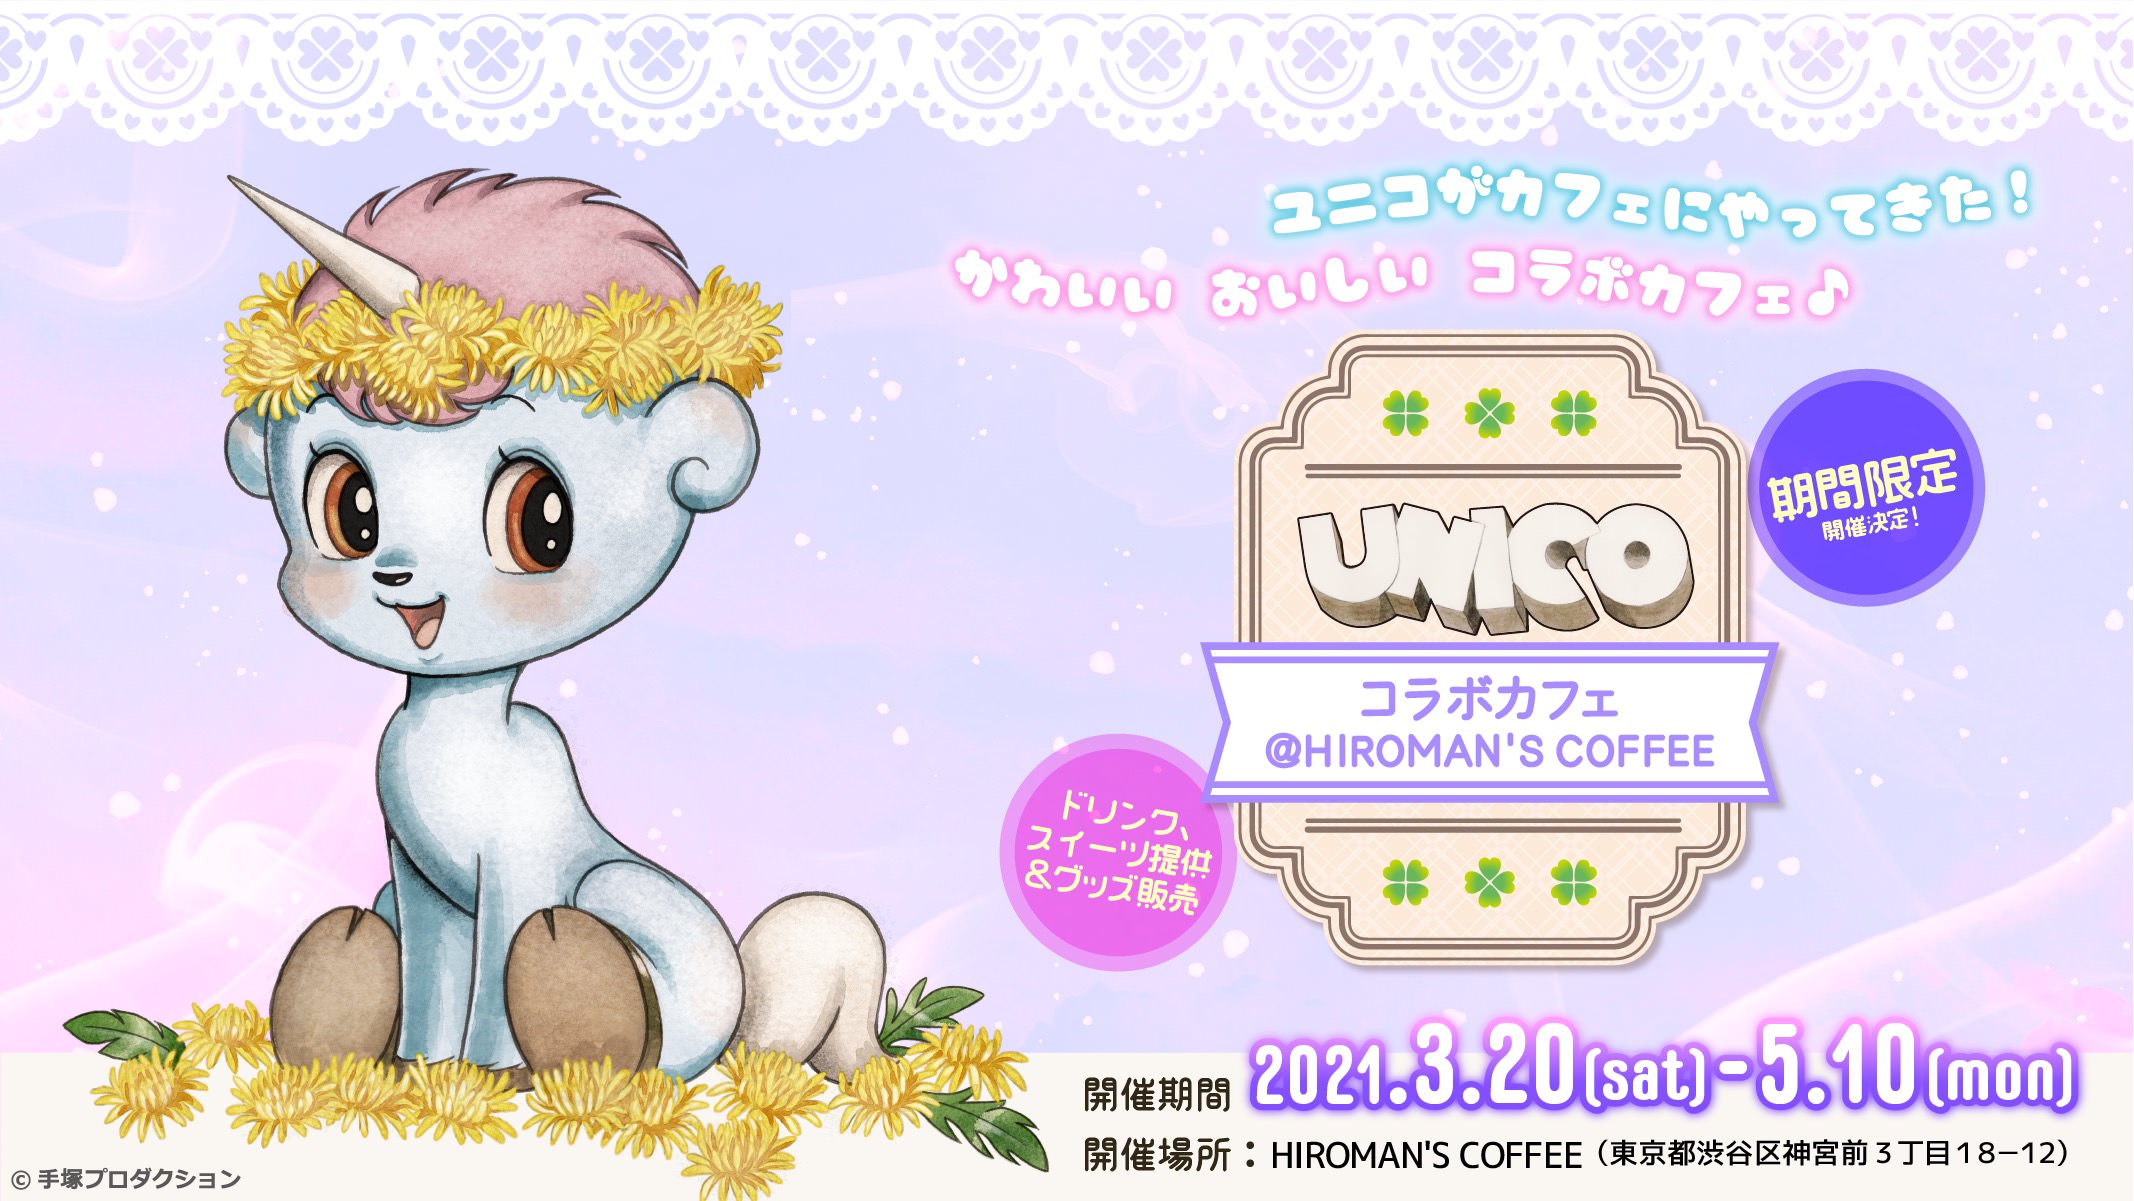 ユニコカフェ in HIROMAN’S COFFEE 3.20-5.10 コラボカフェ開催!!